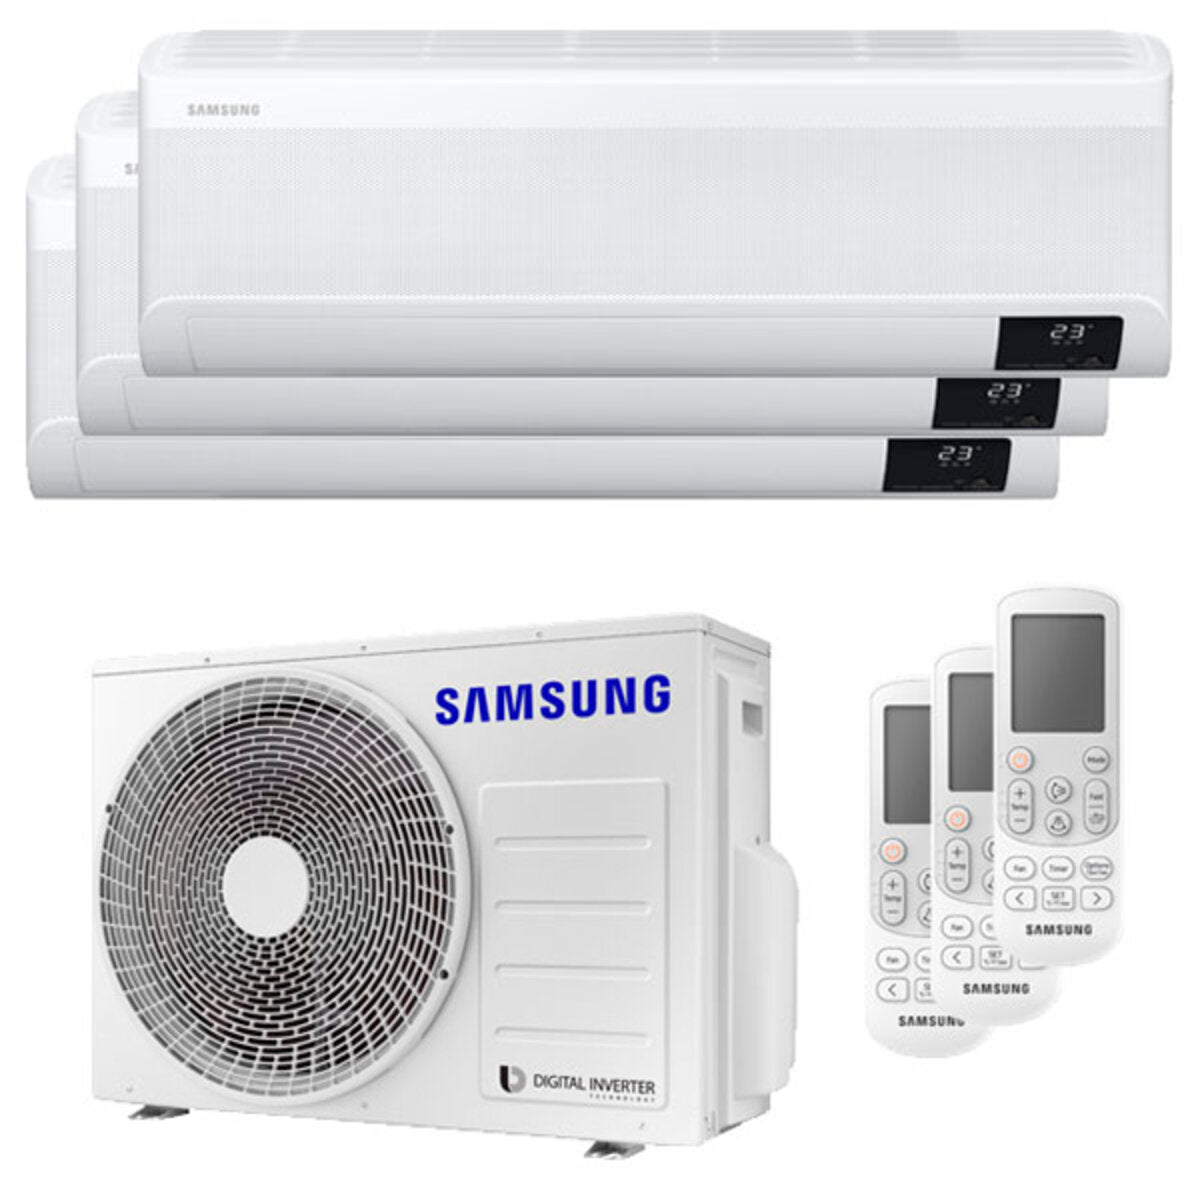 Samsung windfree Avant Klimaanlage Trial Split 7000 + 7000 + 12000 BTU Inverter A++ WLAN Außengerät 5,2 kW